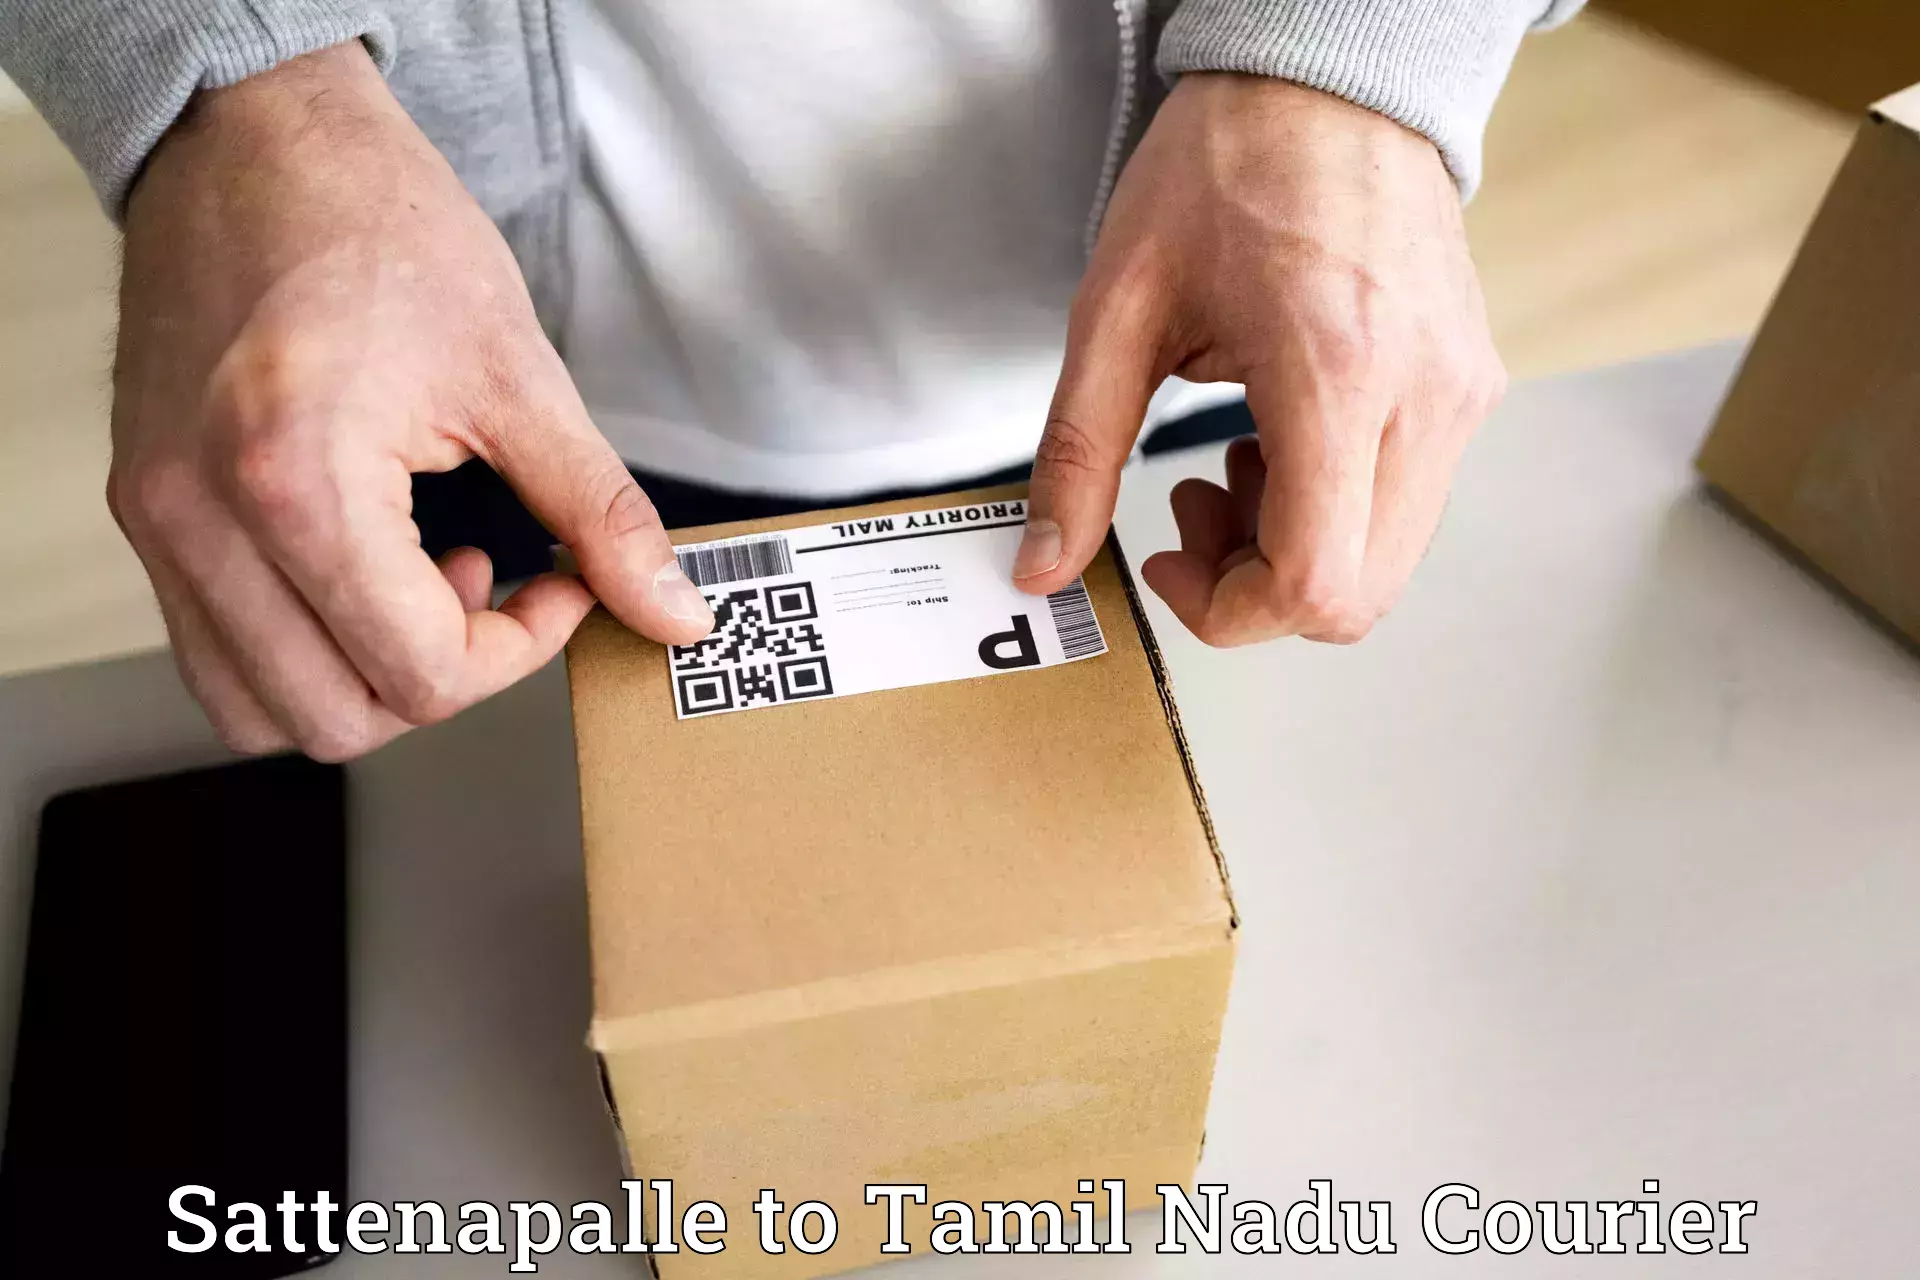 Efficient parcel service Sattenapalle to Tiruvarur